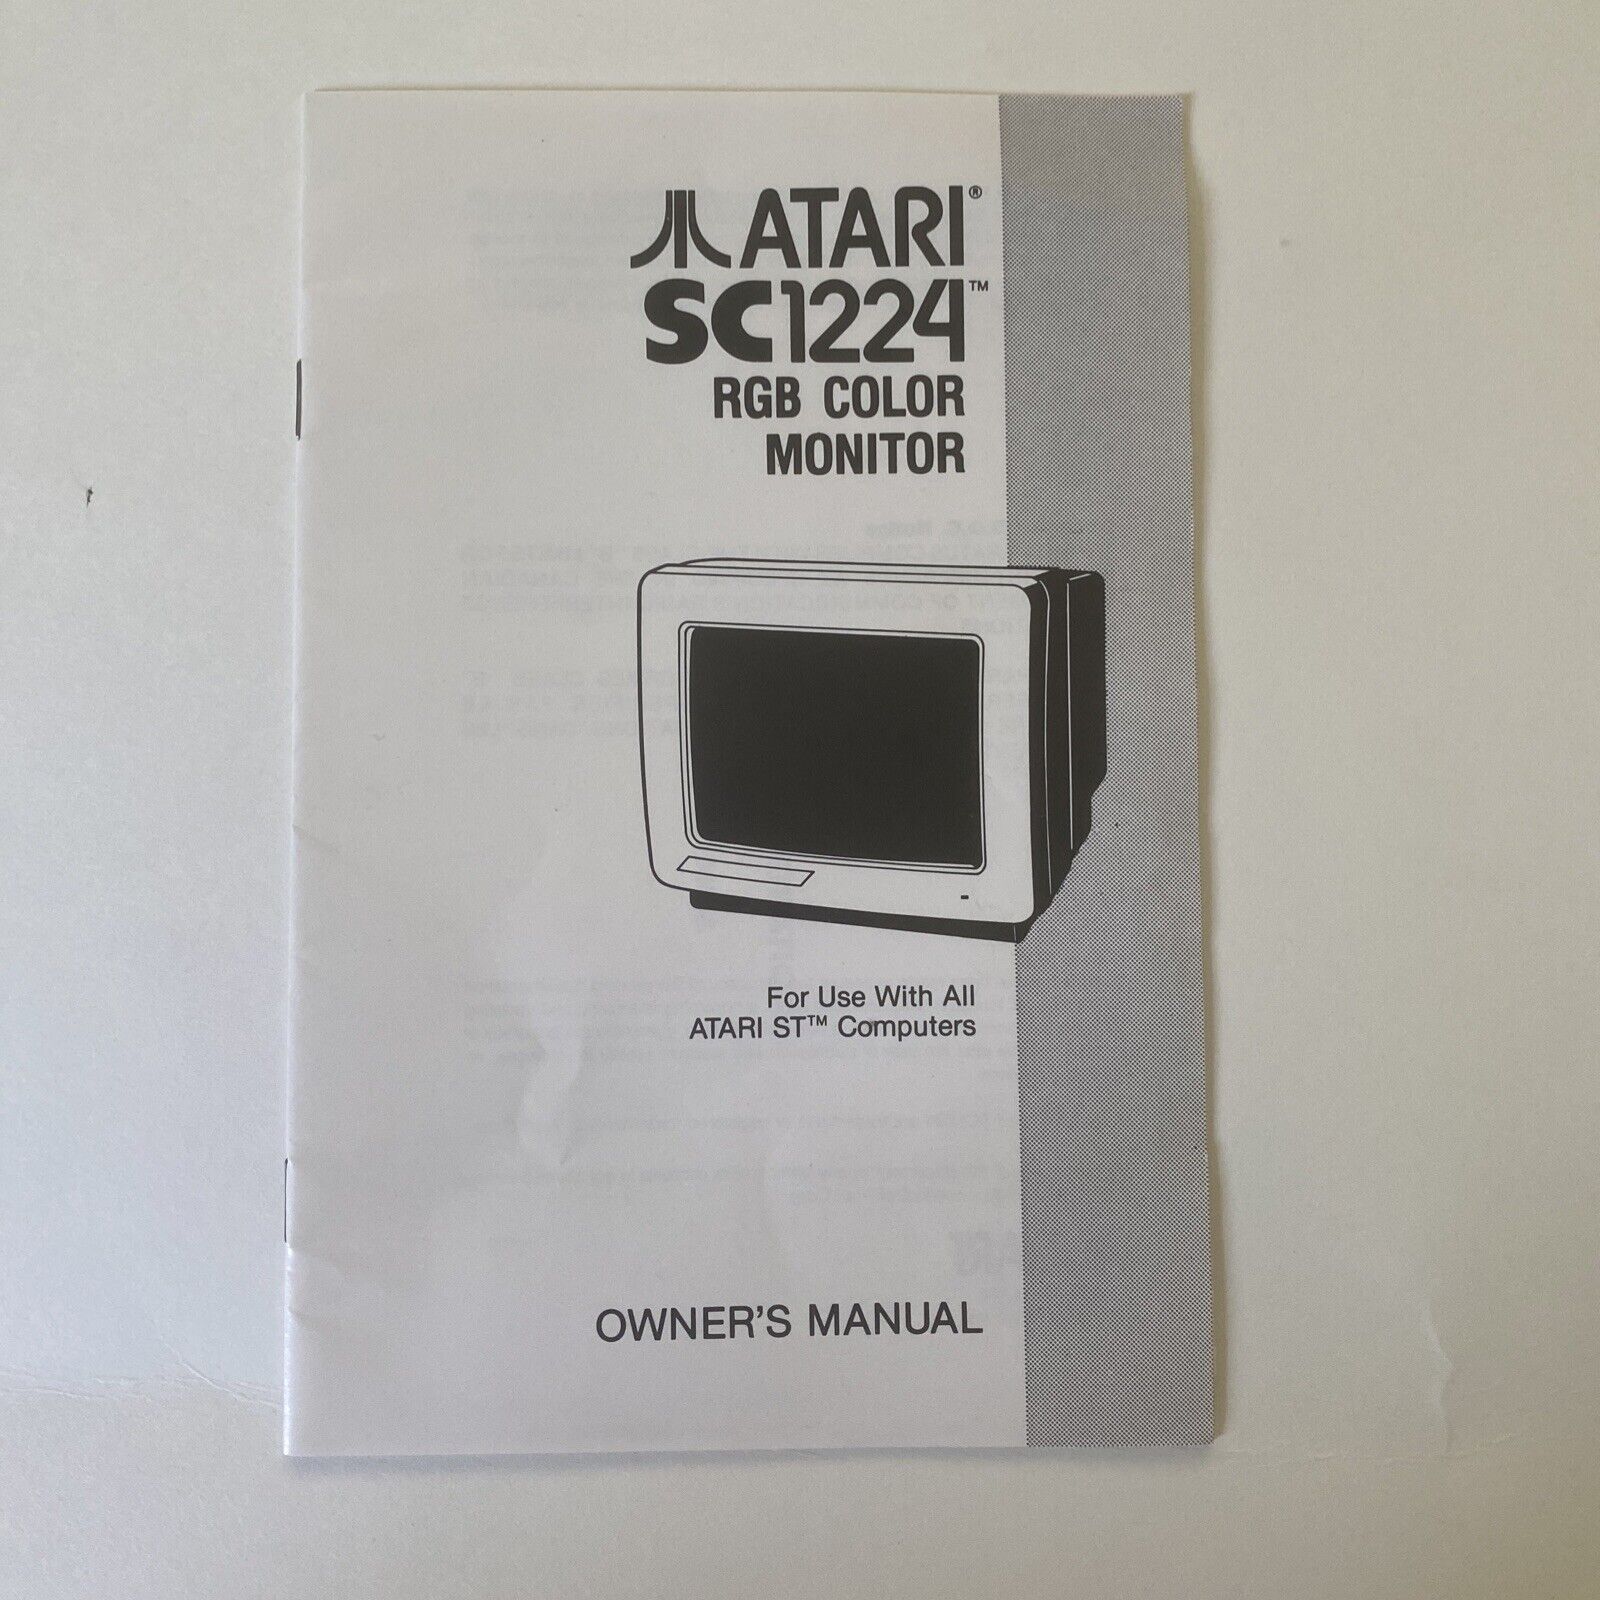 Original Manual for Atari SC1224 Color Monitor